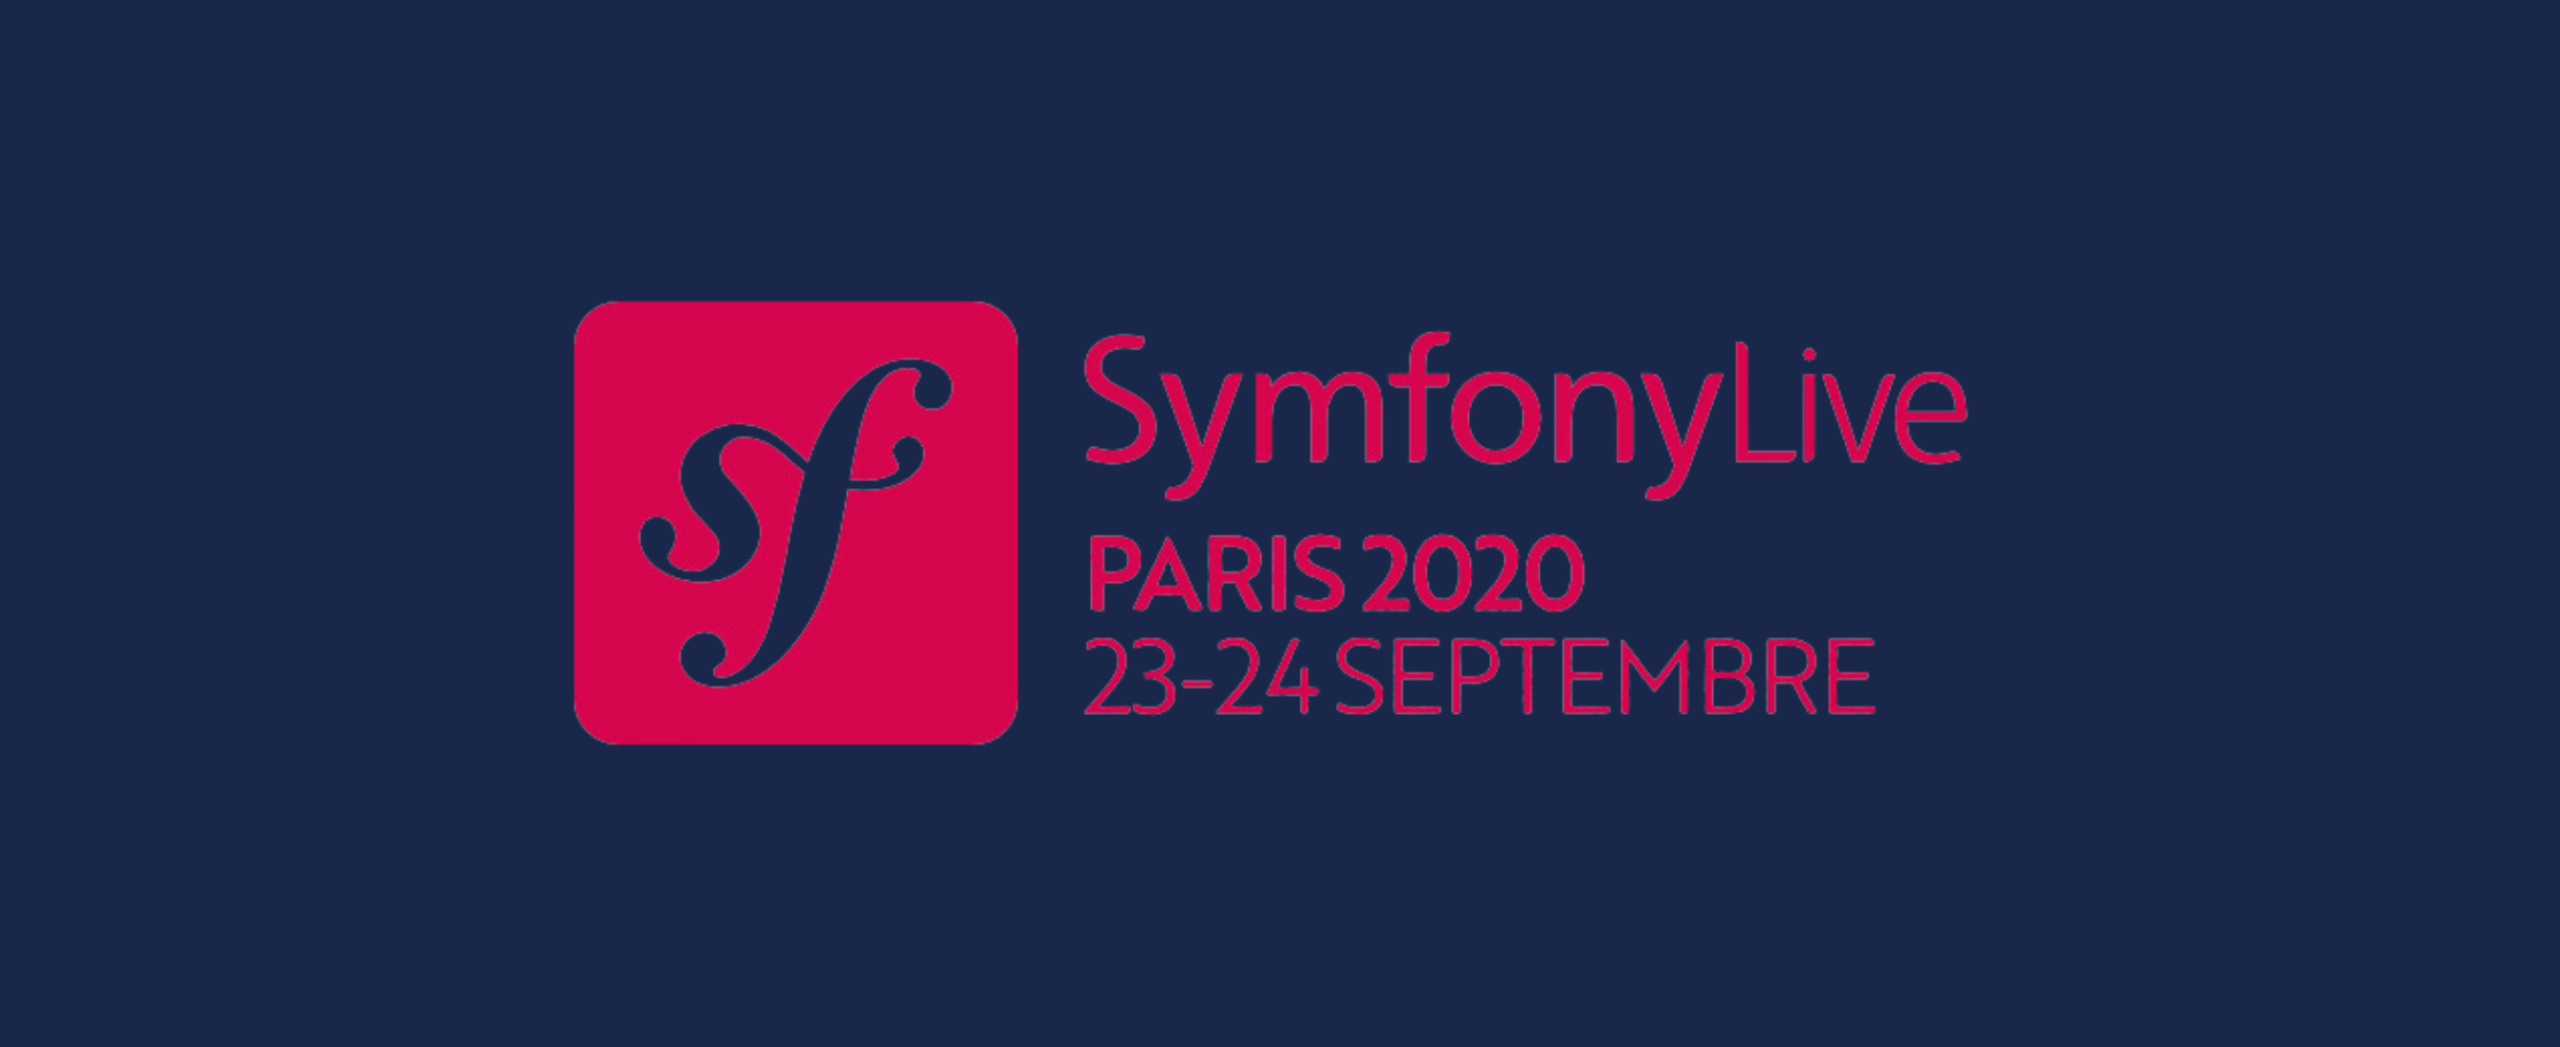 Symfony Live 2020